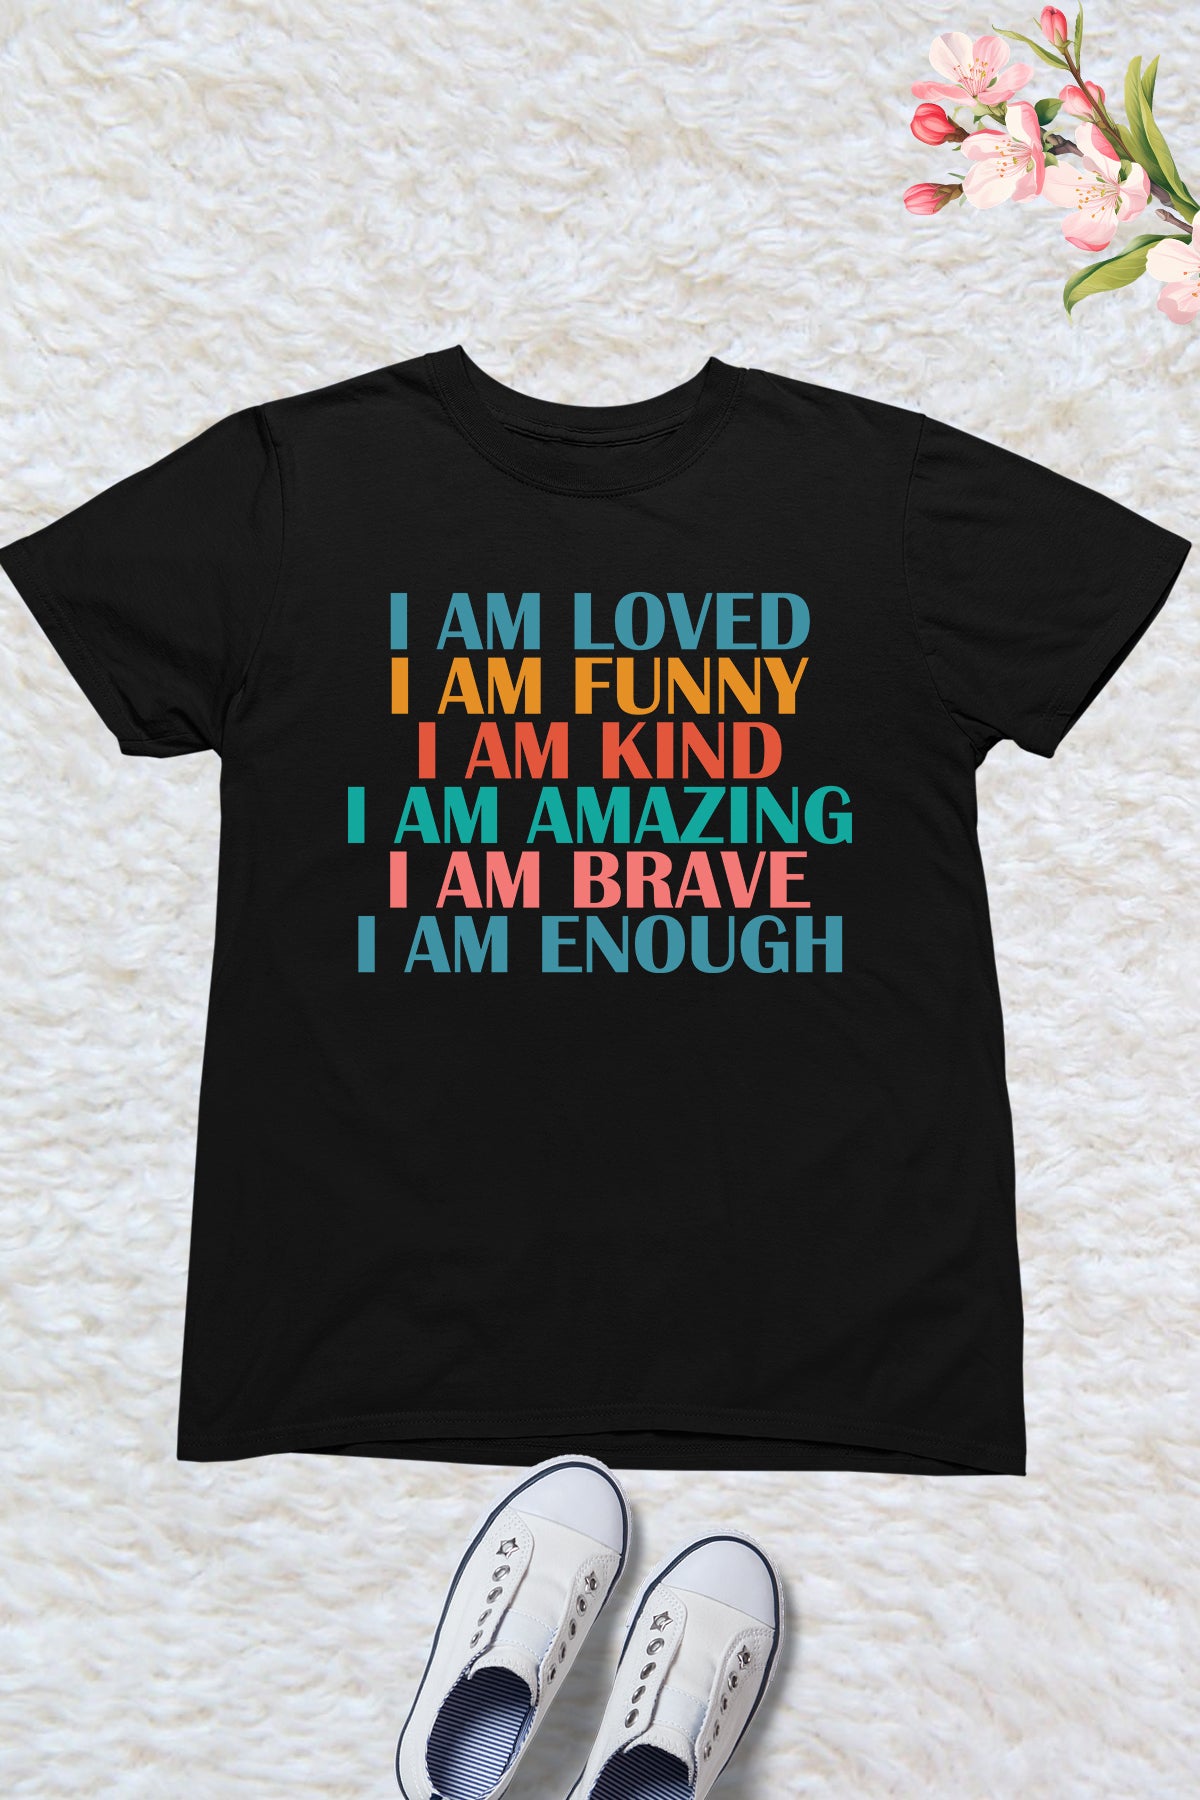 I am Loved Funny Kind Amazing Brave Enough Kids Shirt